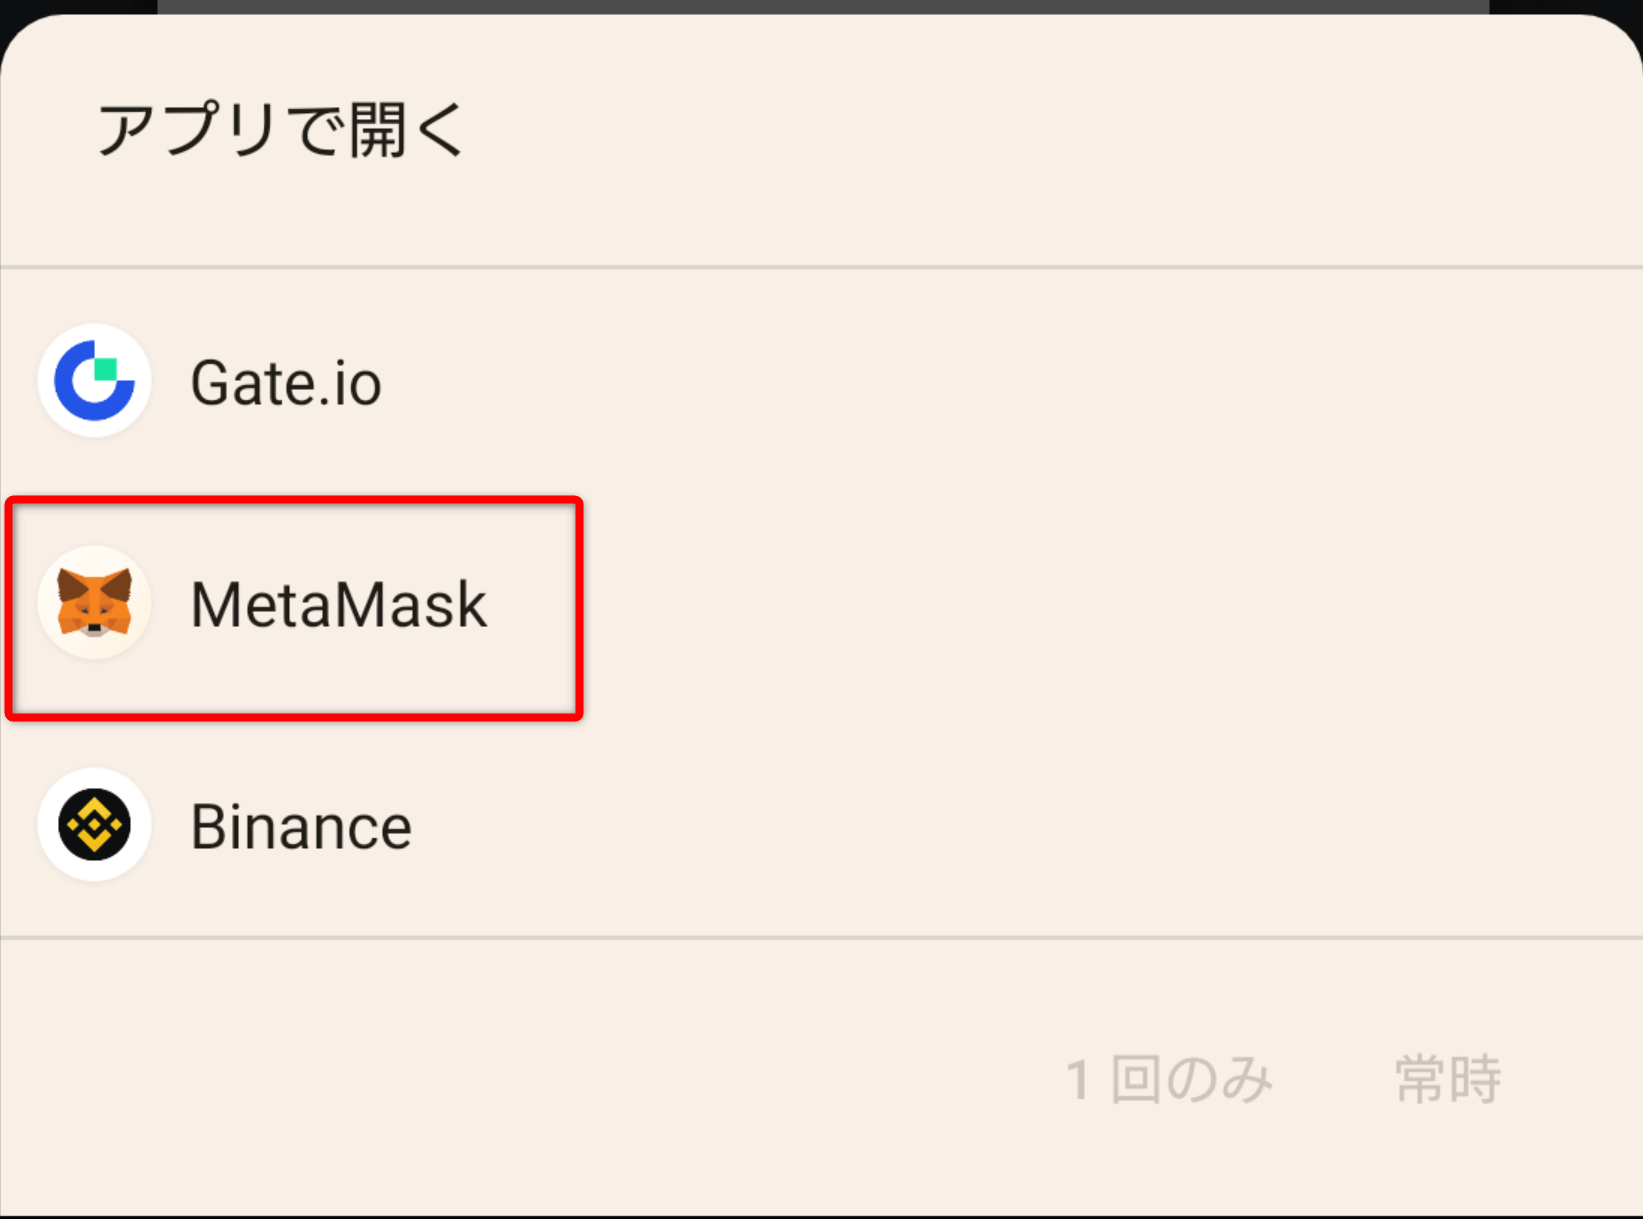 4.メタマスクを選択